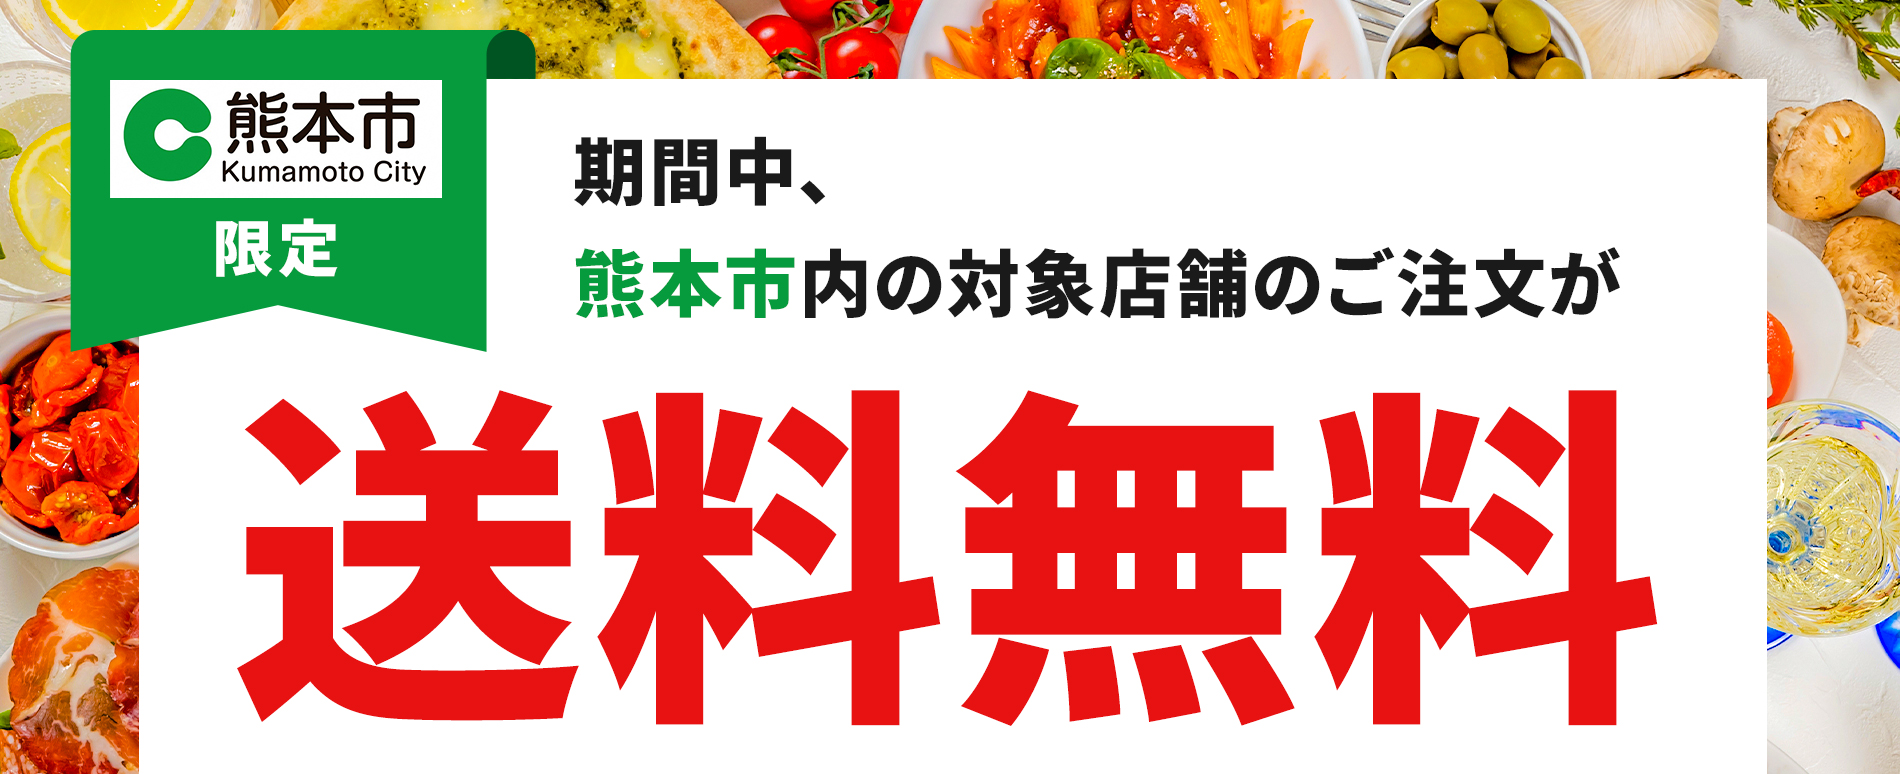 出前館 熊本市と連携 デリバリーを促進する取り組みを再実施 株式会社出前館のプレスリリース